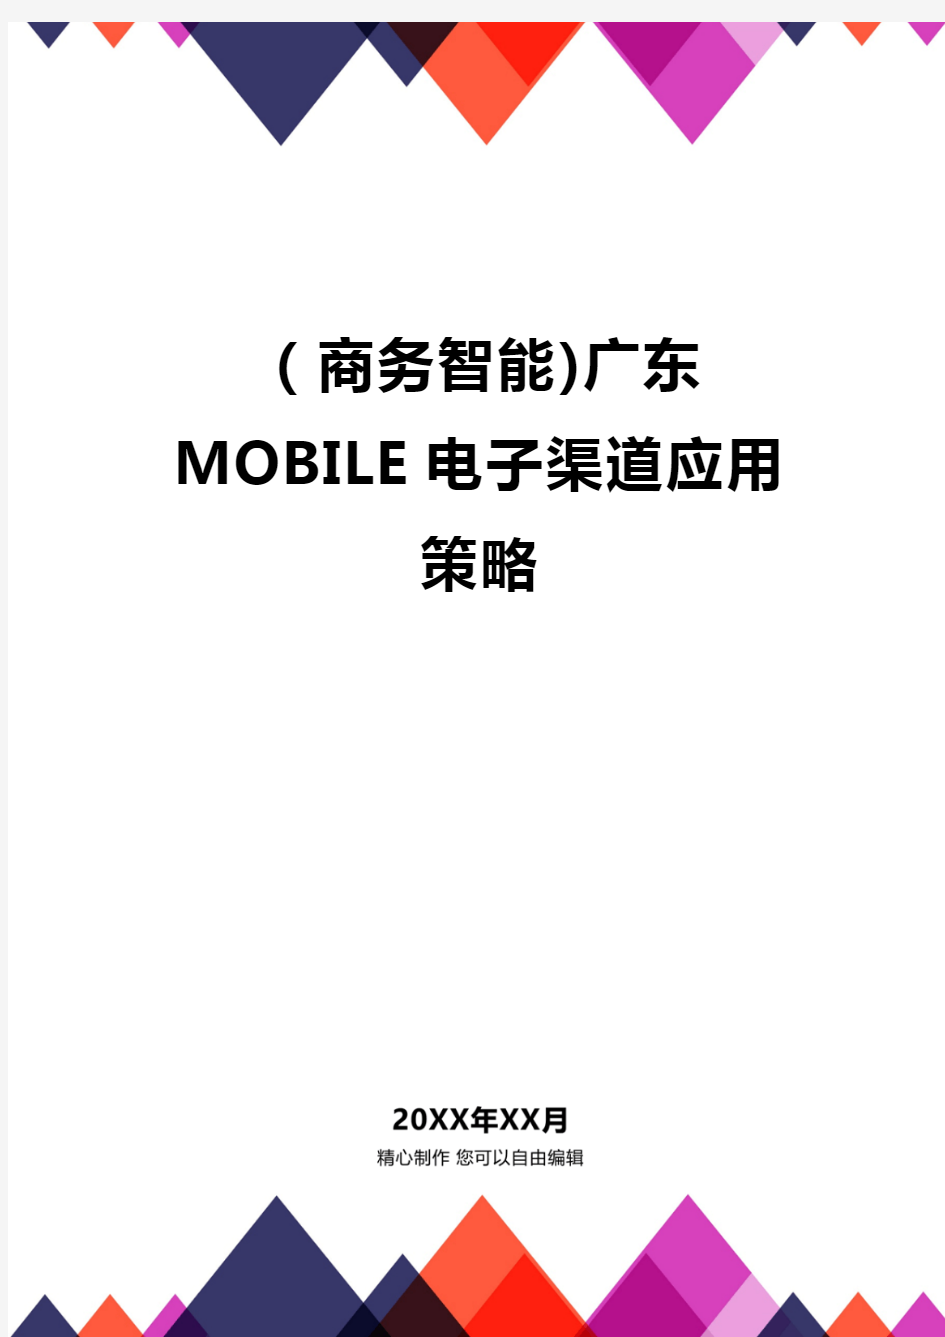 (商务智能)广东MOBILE电子渠道应用策略品质